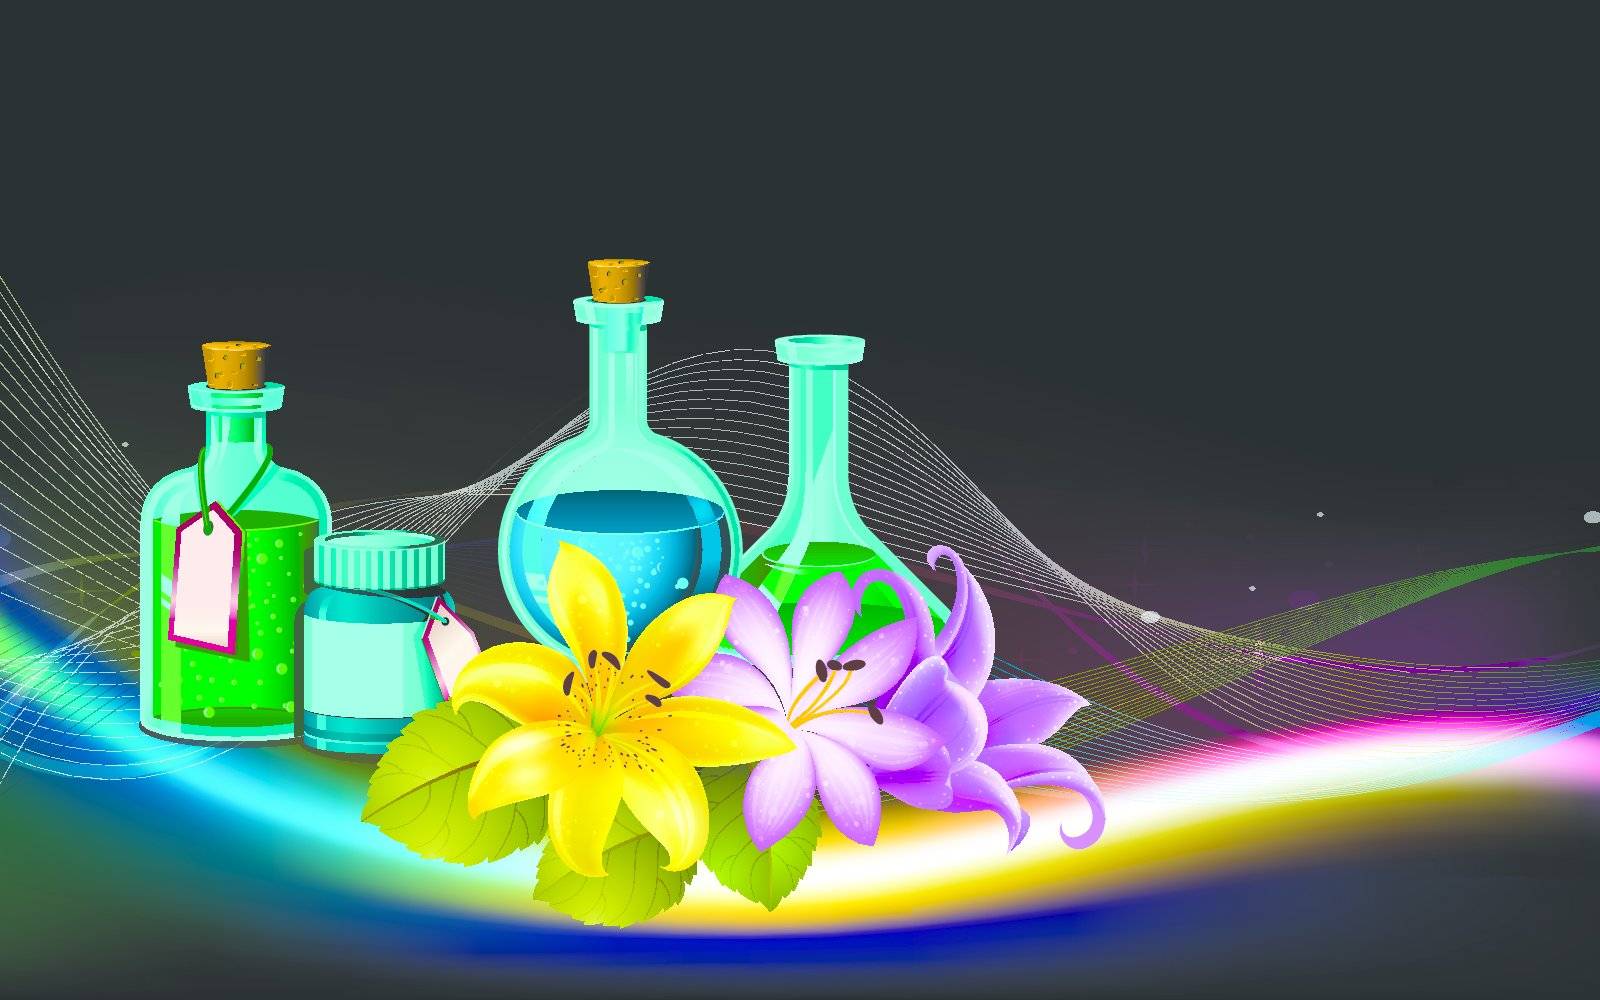 aroma spa oil bottles and flower illustration